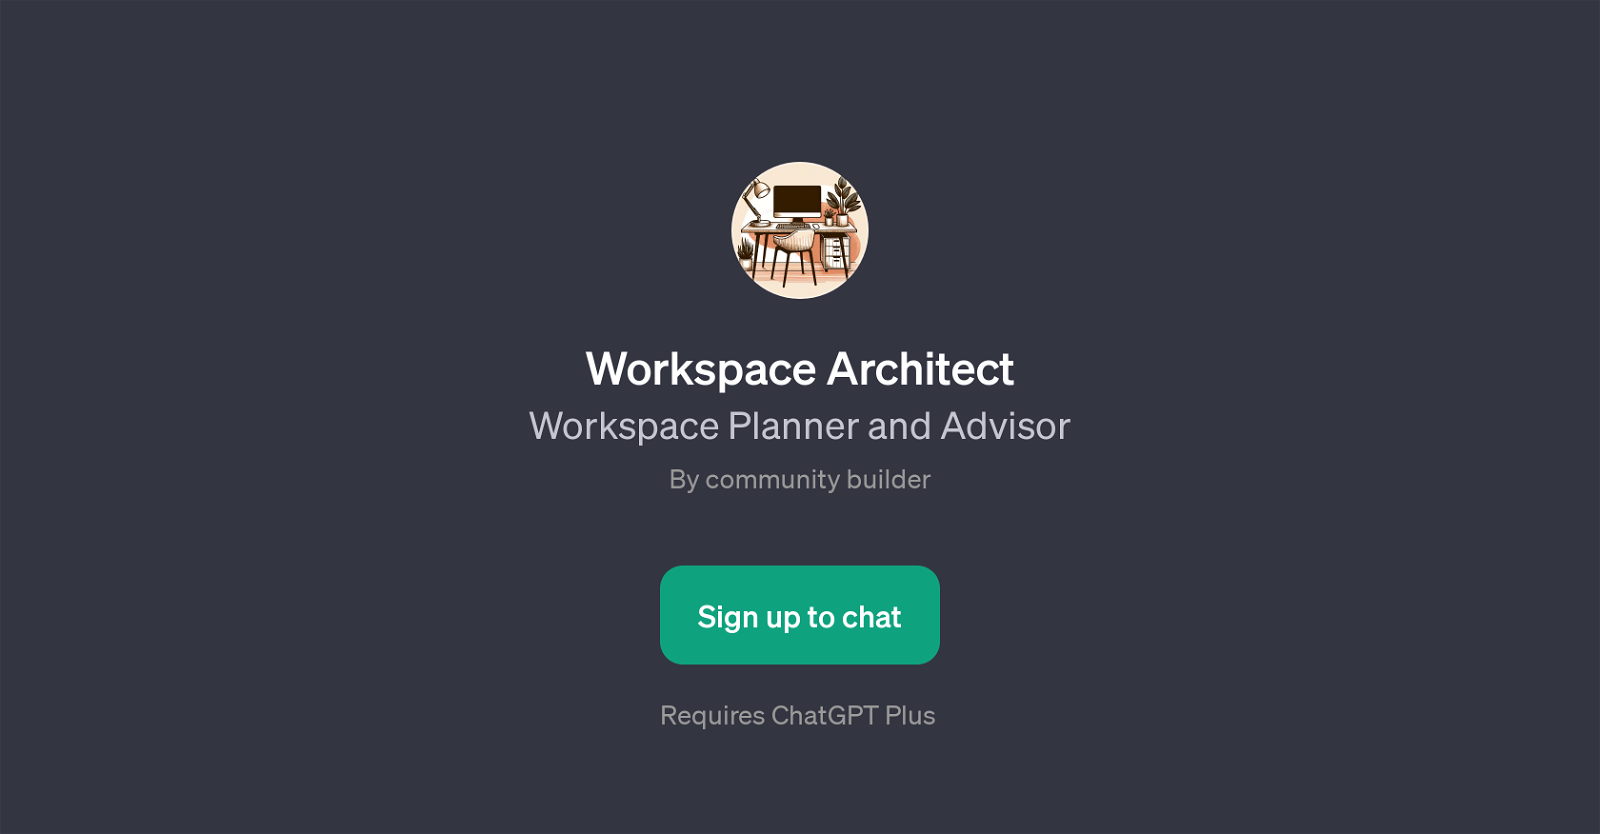 Workspace Architect website